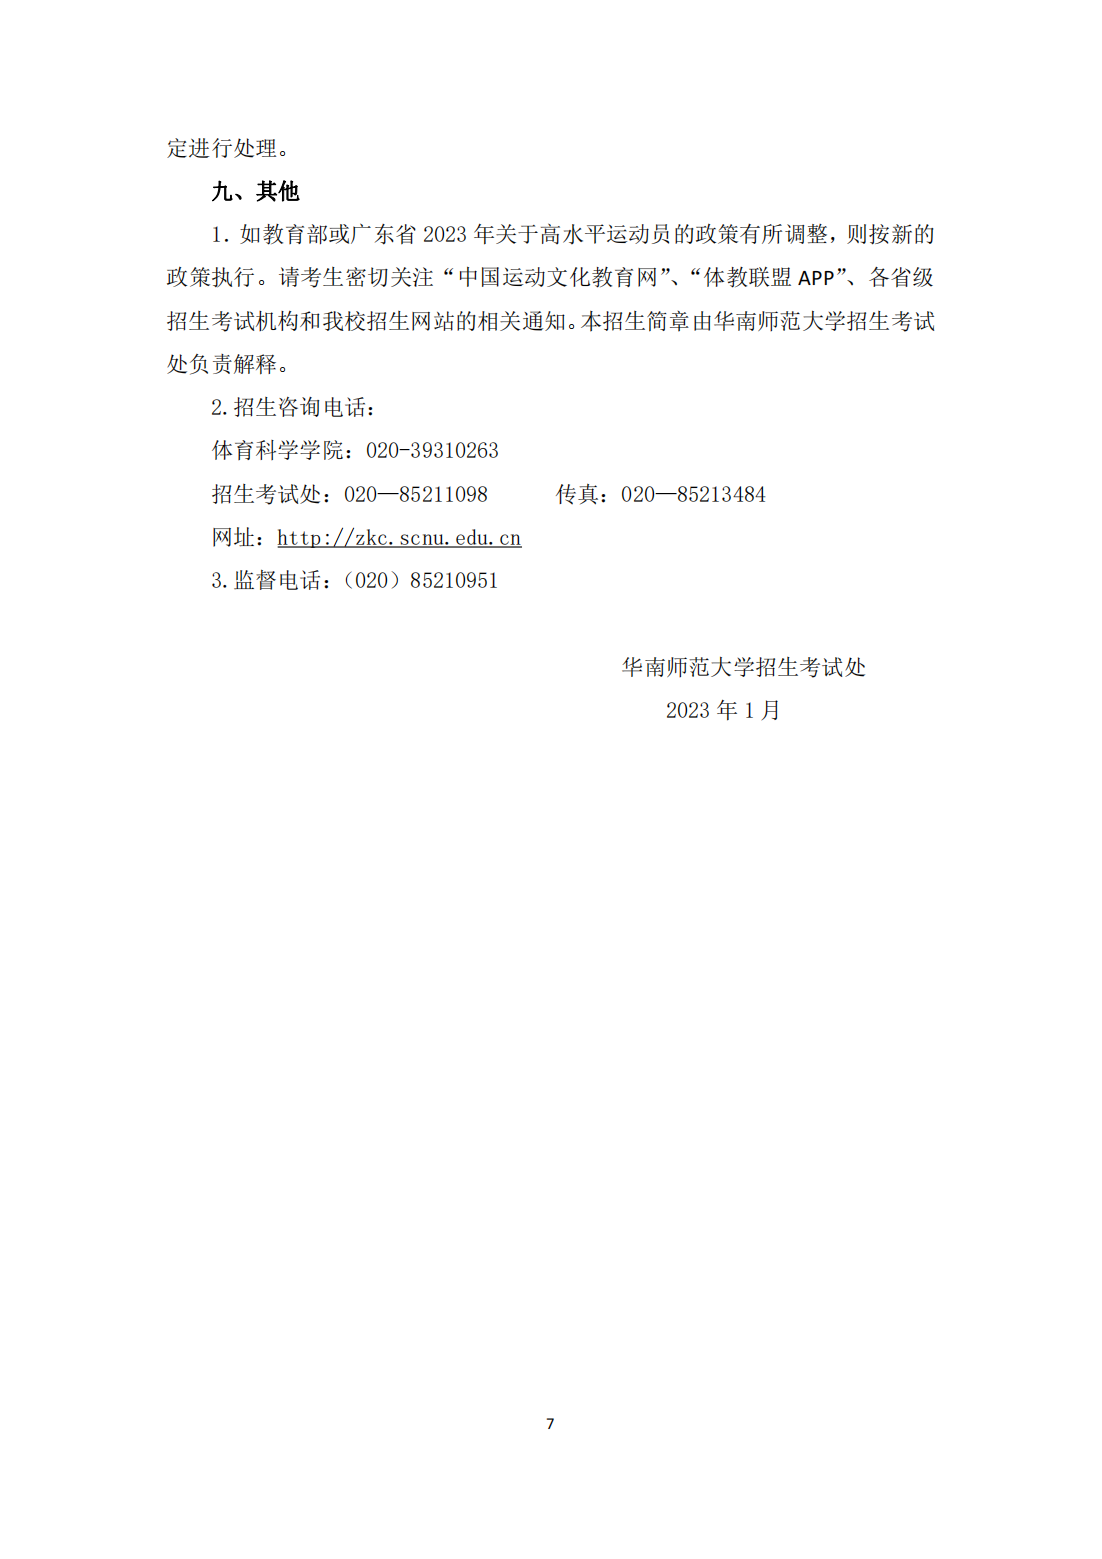 华南师范大学 2023 年高水平运动队招生简章